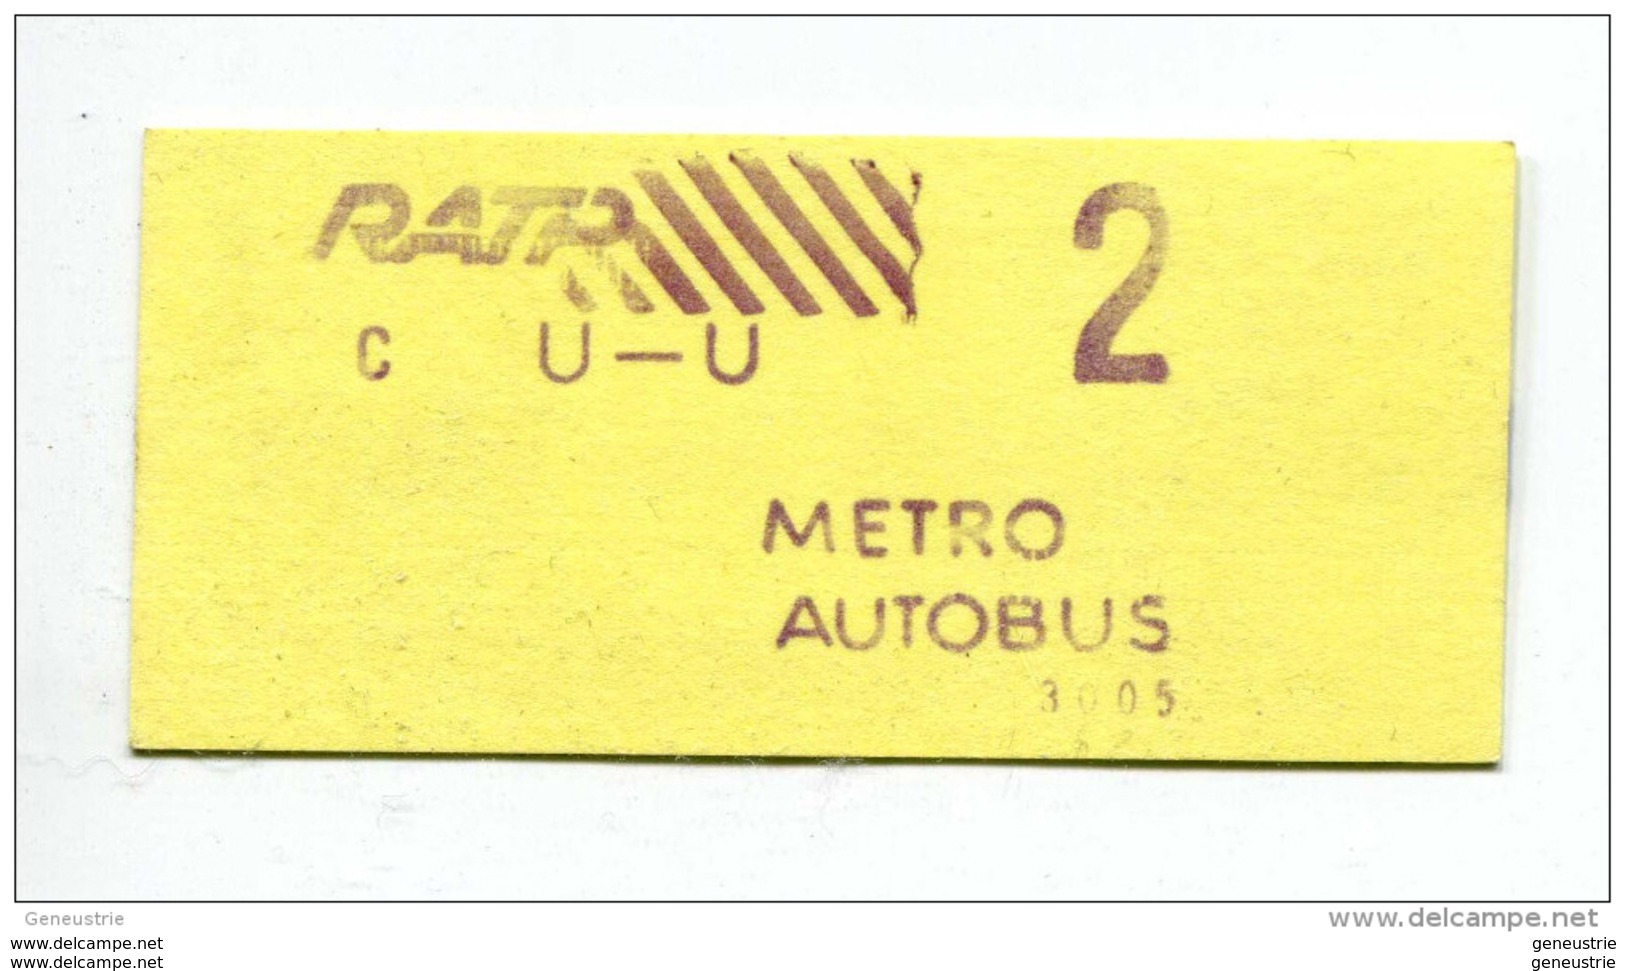 Europe - Ticket de metro, bus - Paris - Années 80 - 2ème classe - Billet  RATP